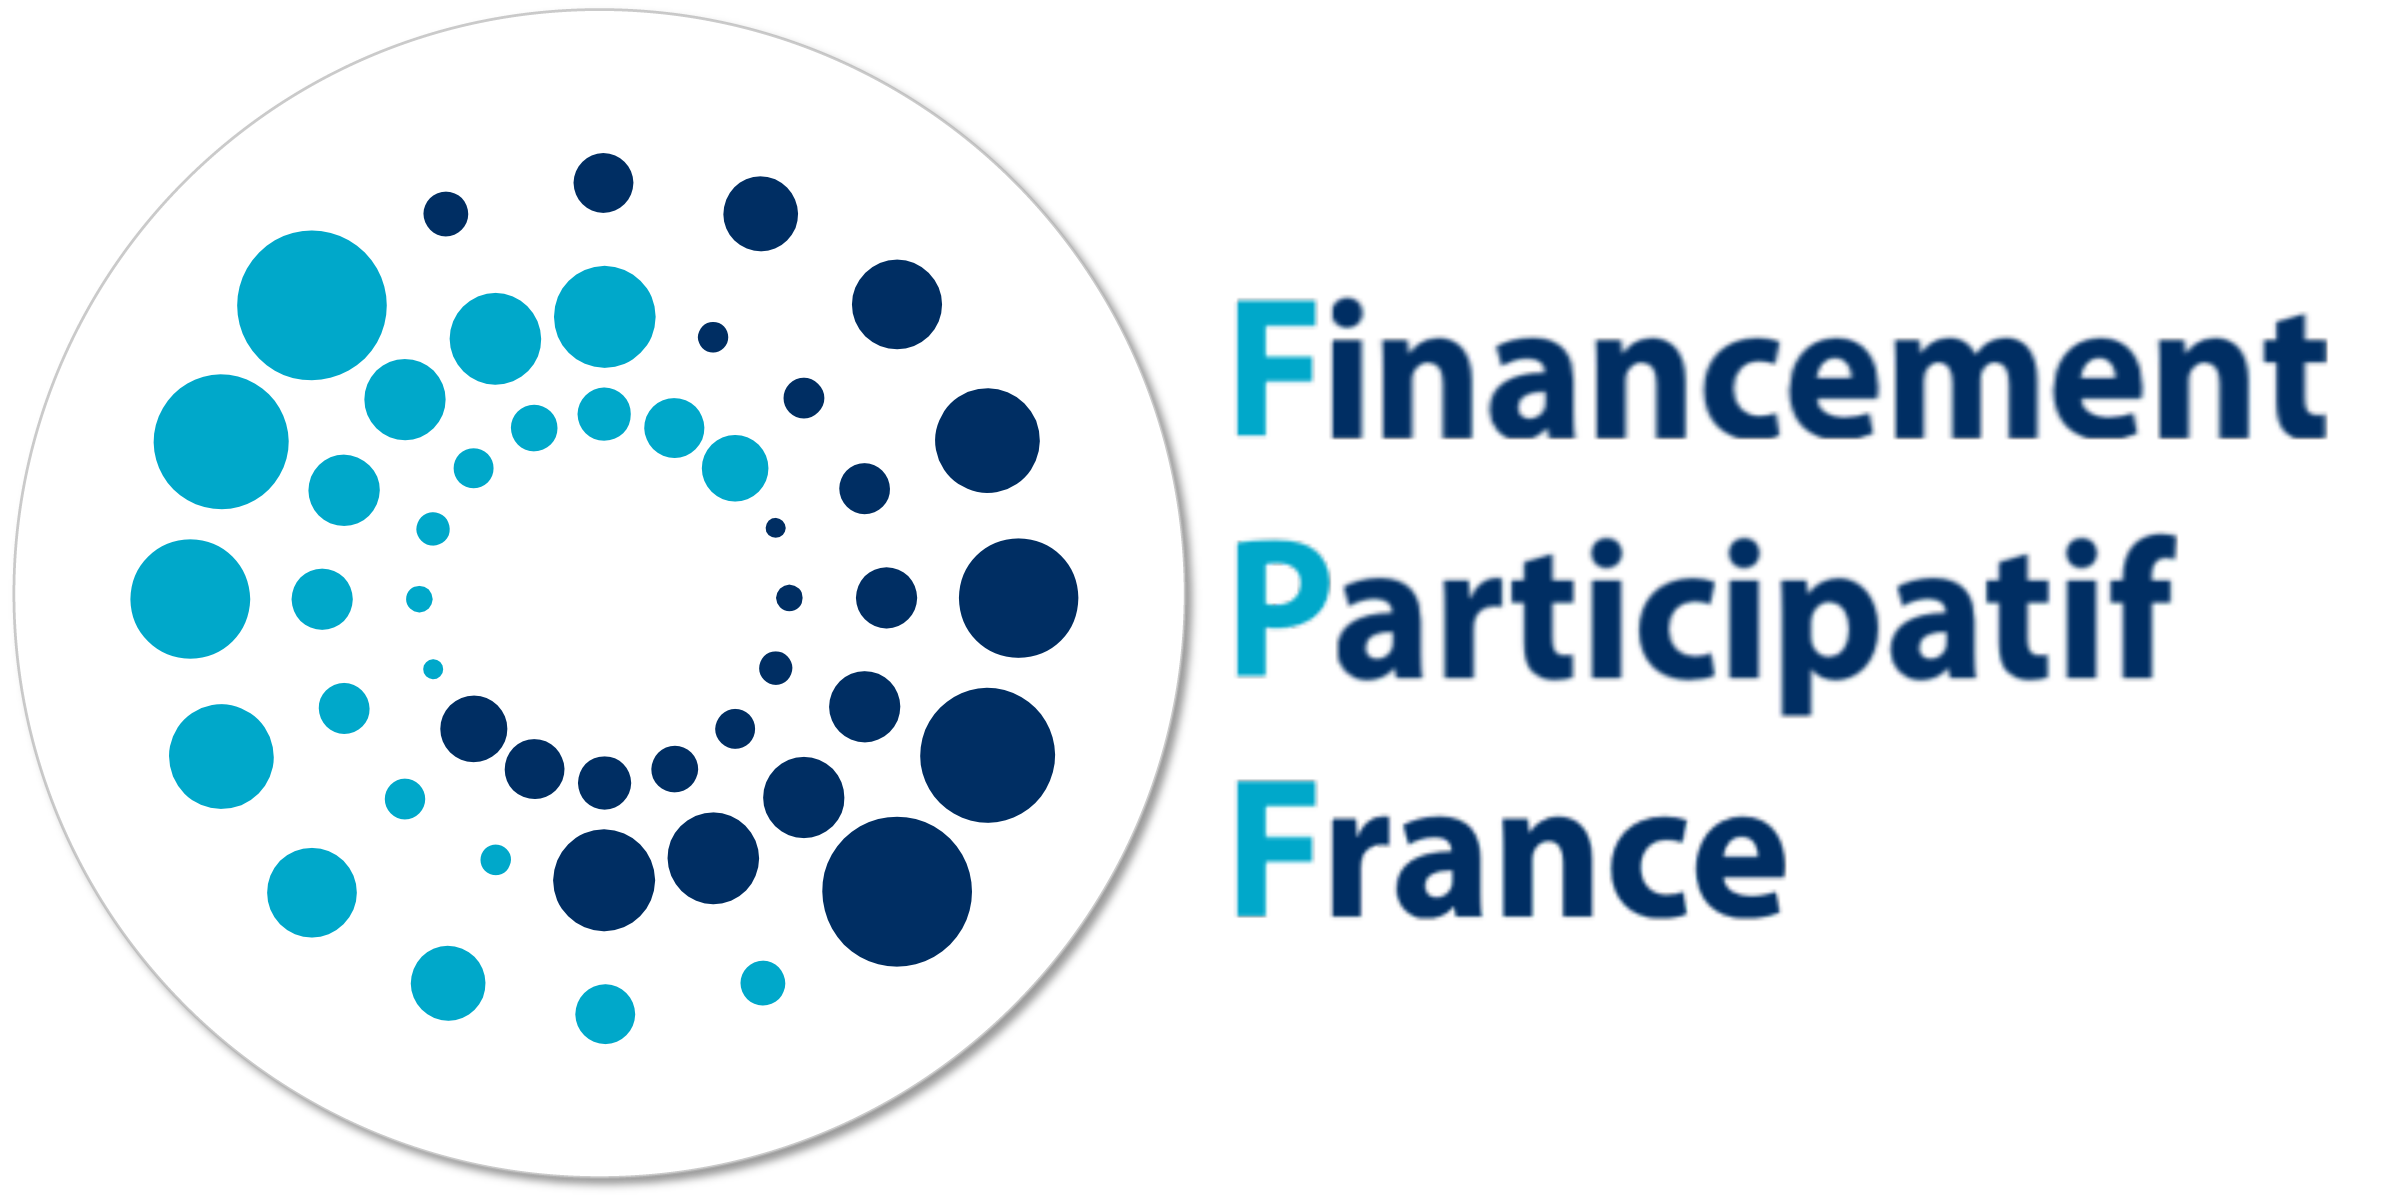 Financement-Participatif-France